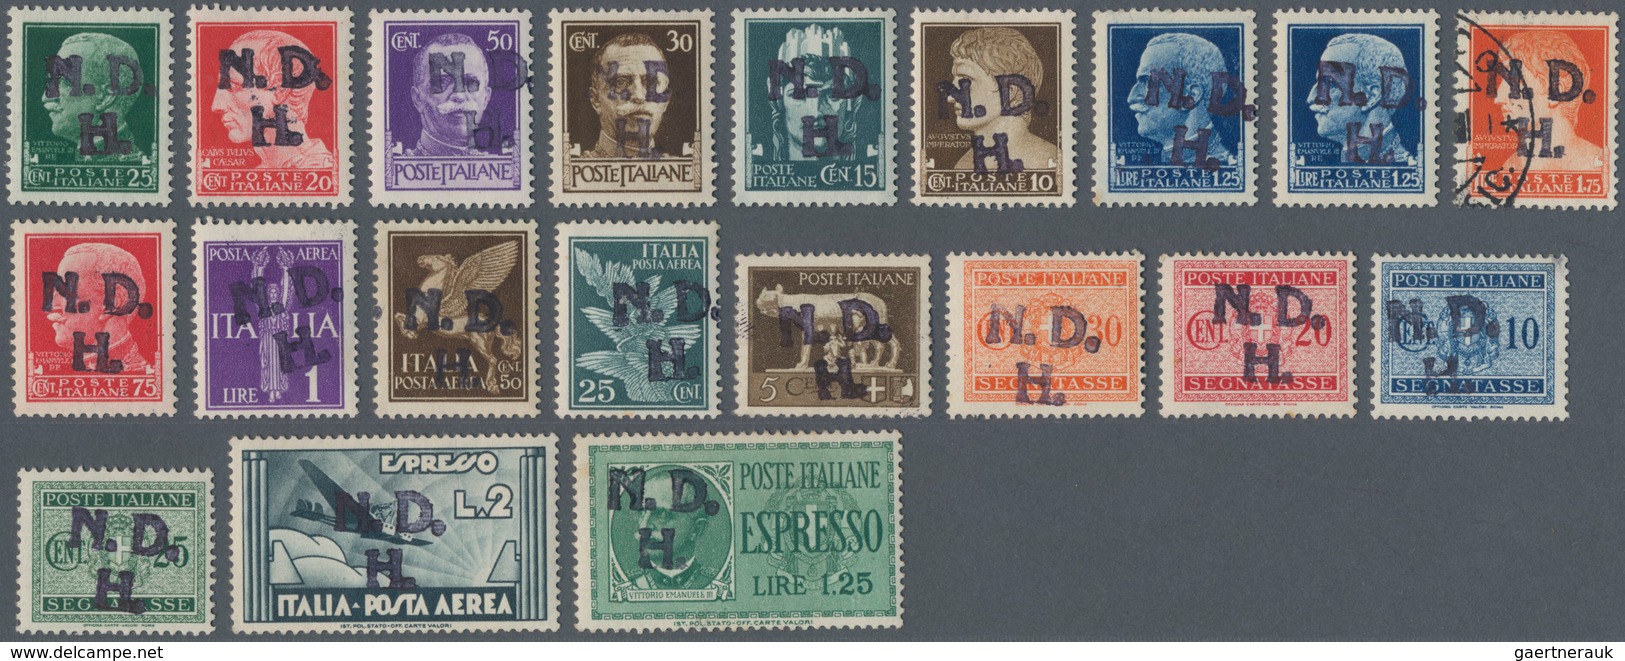 Kroatien - Besonderheiten: 1943/1945, Sibenik Local Issue, "N.D.H." Overprints On Italy, Set Of 20 V - Croatia